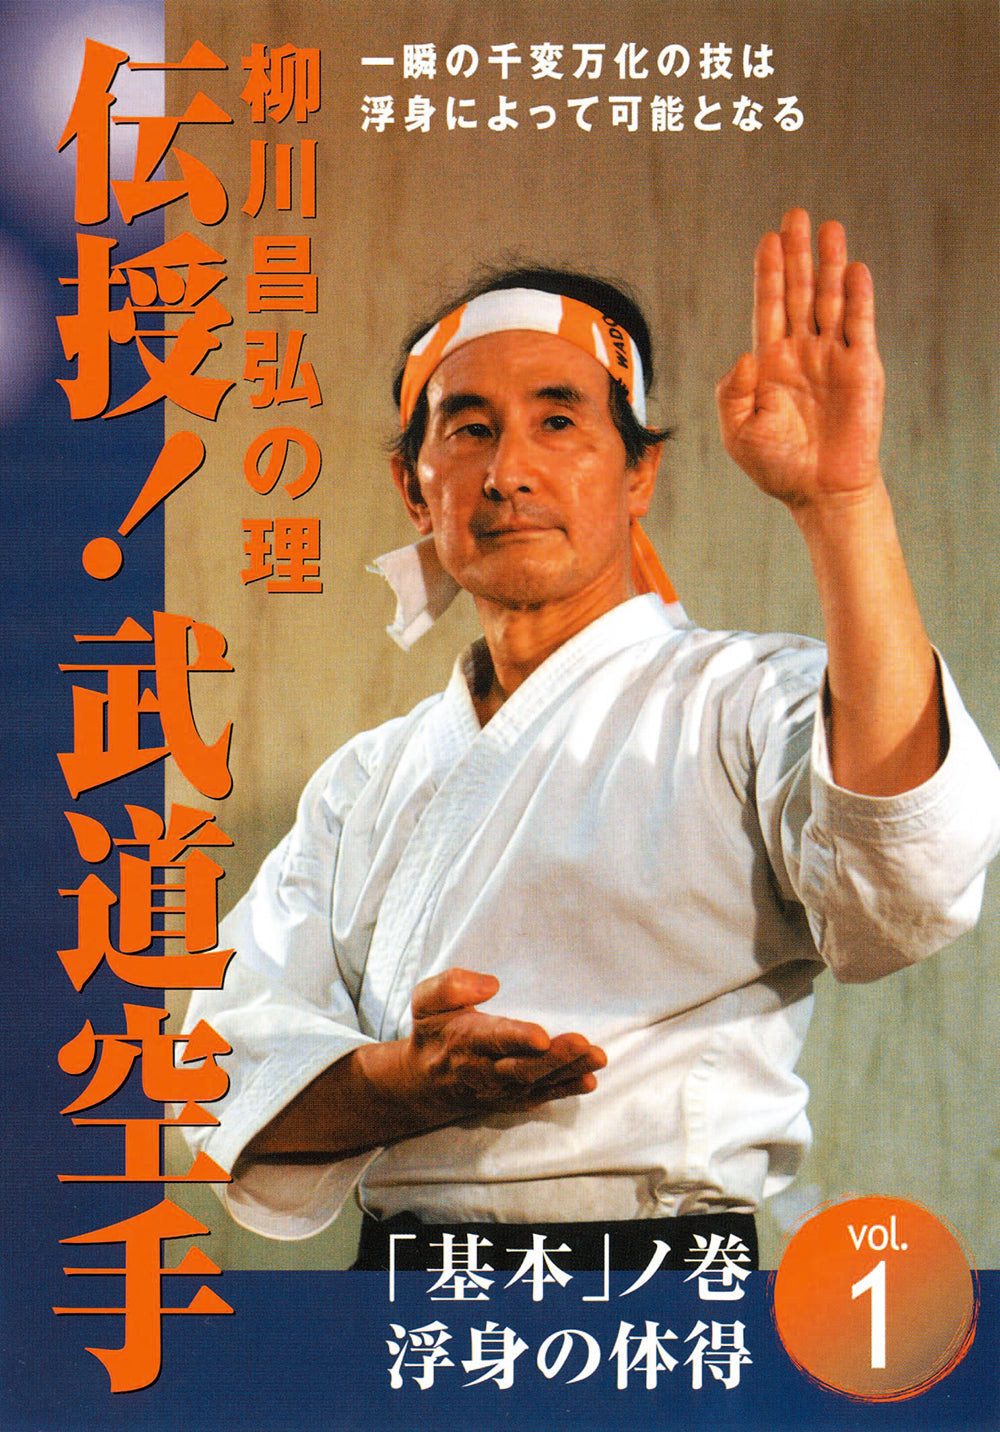 DVD básico de Budo Karate de Masahiro Yanagawa